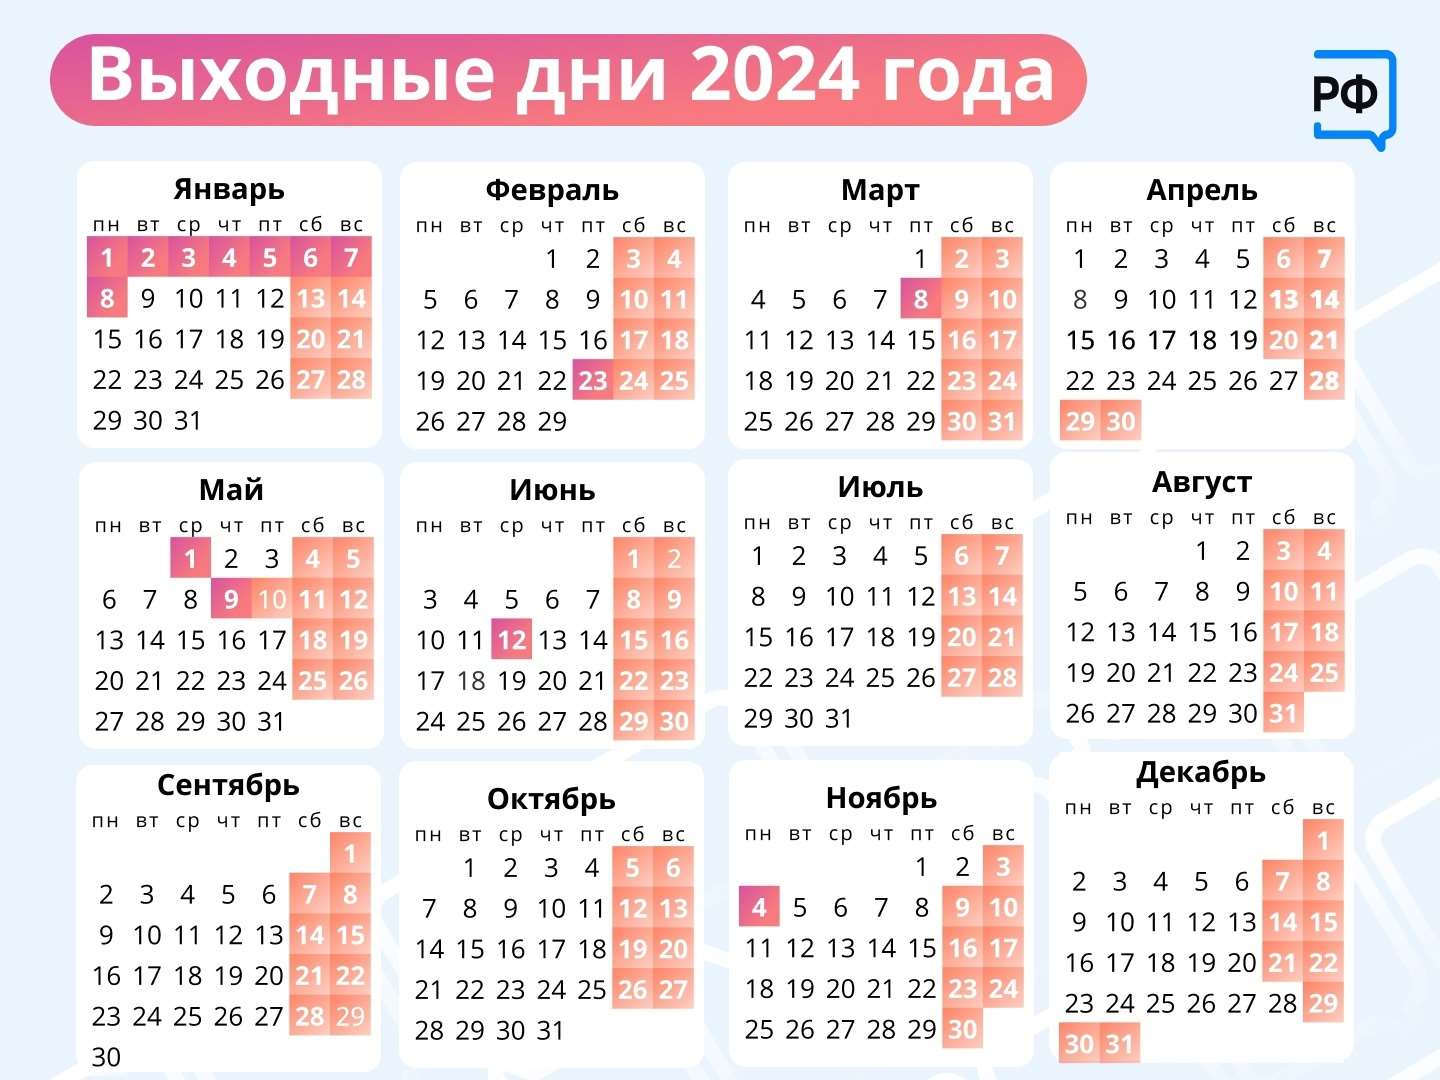 Праздники в мае 2024 г. Выходные дни в 2024г. Праздничные дни в 2024г. Календарь 2024 с праздниками. Календарь праздничных дней в 2024 году в России.